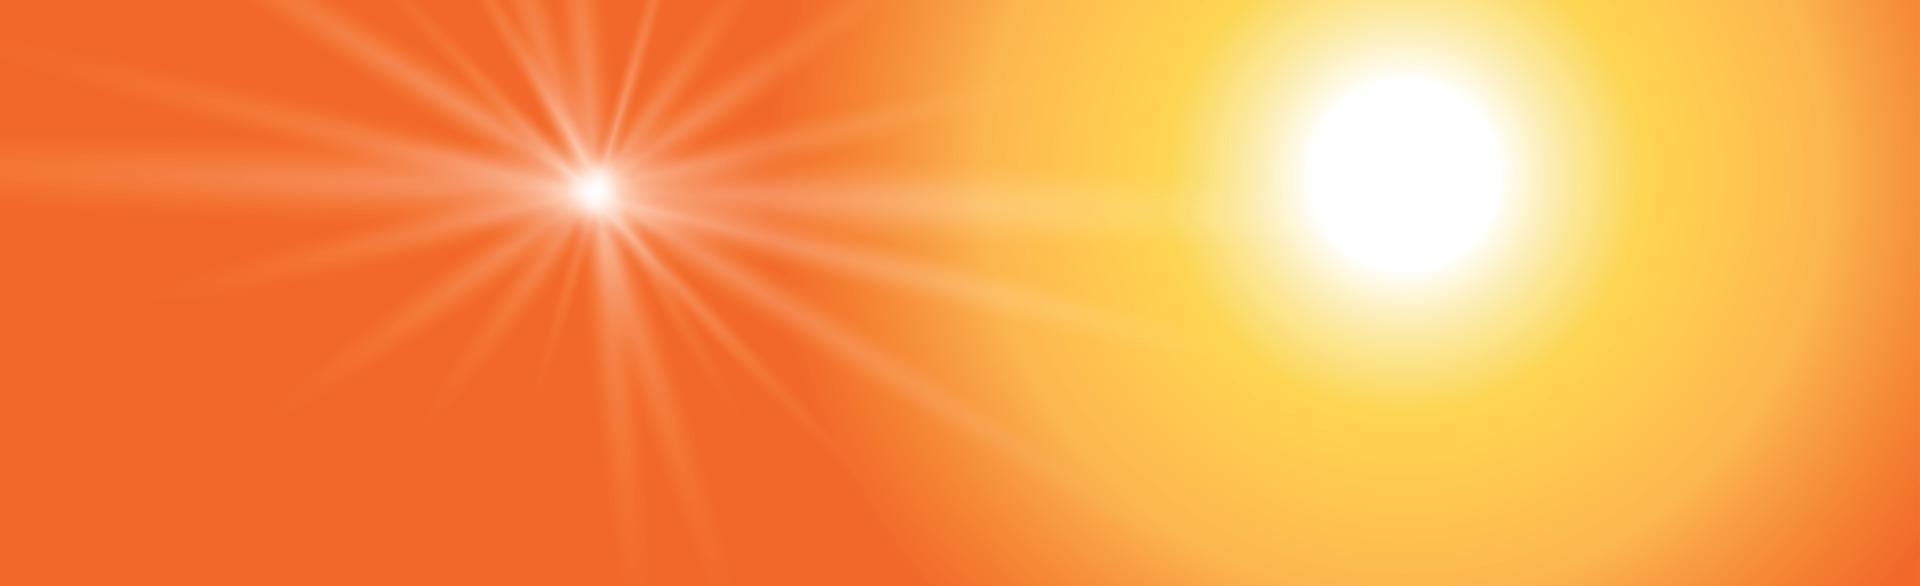 sole splendente su uno sfondo giallo-arancio - illustrazione vettore